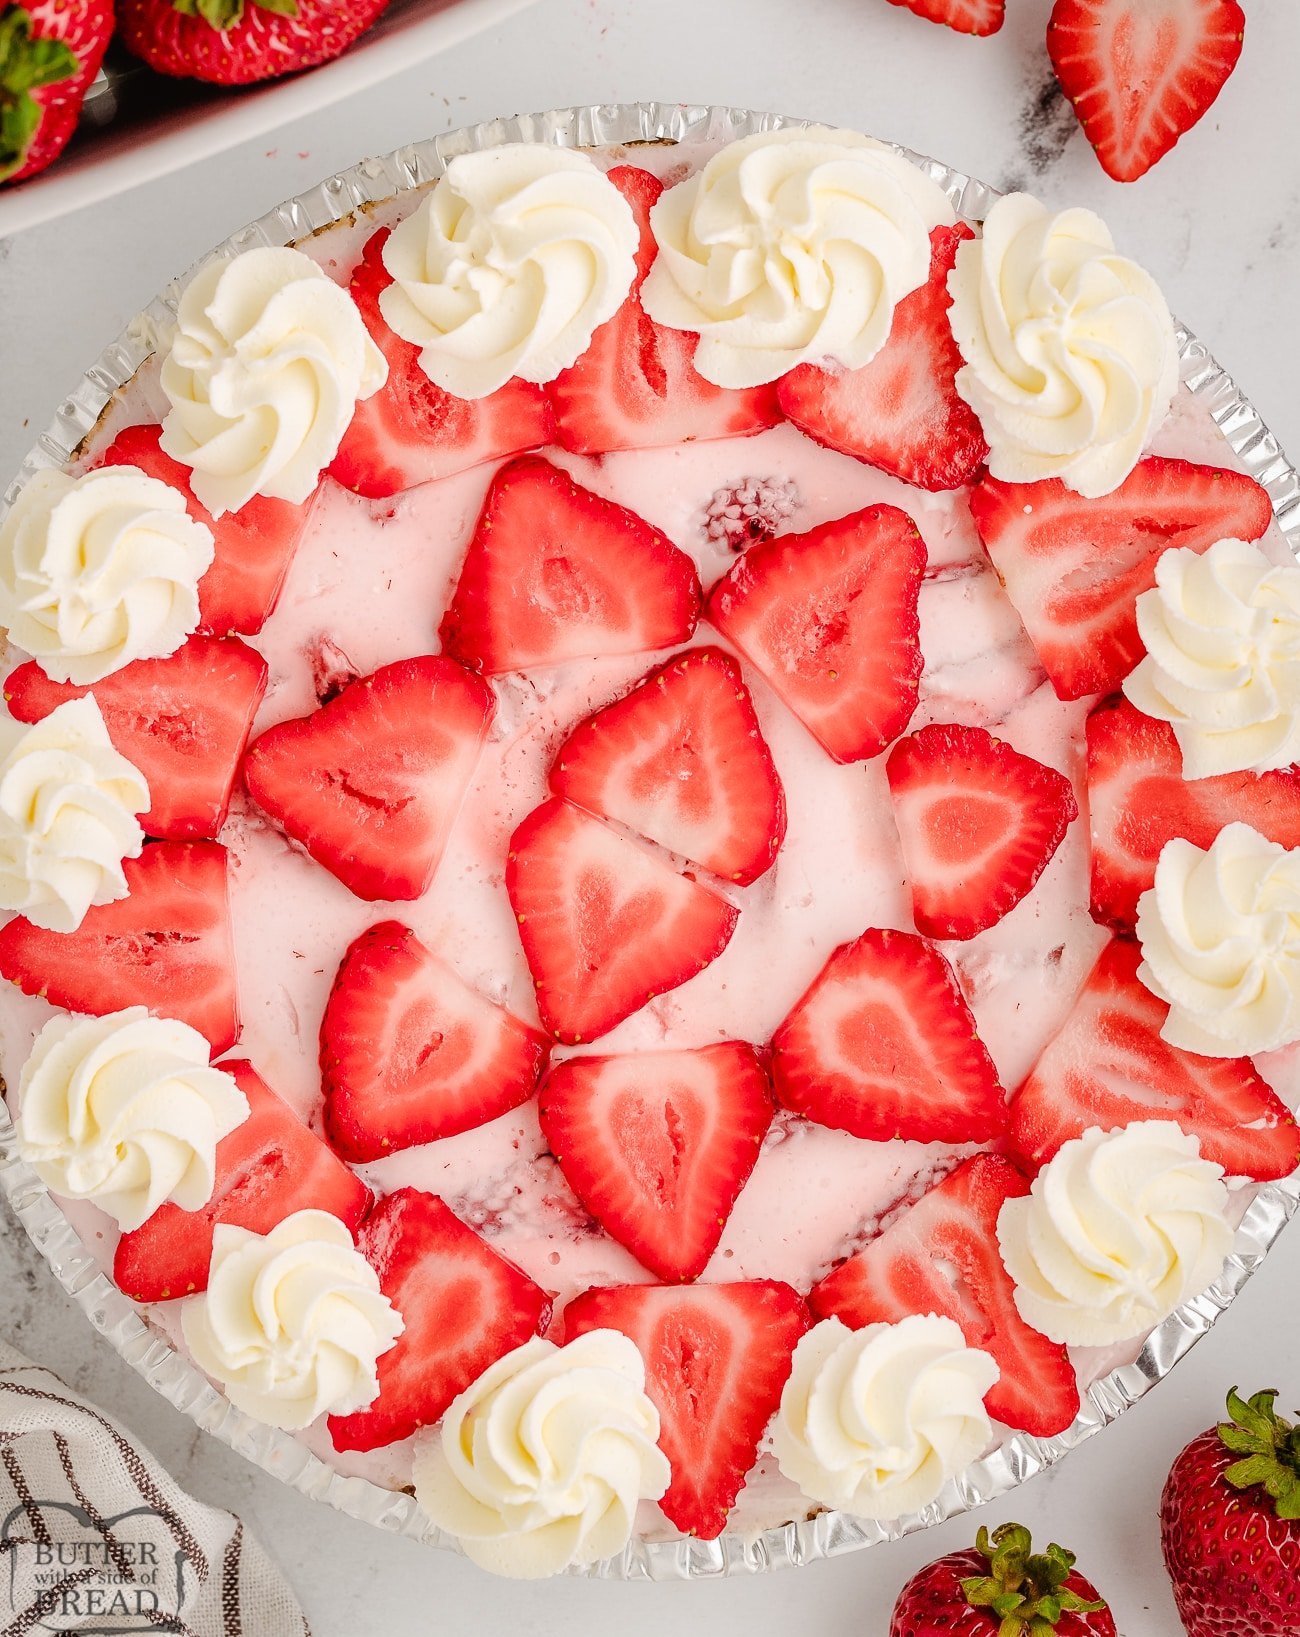 homemade strawberries and cream pie